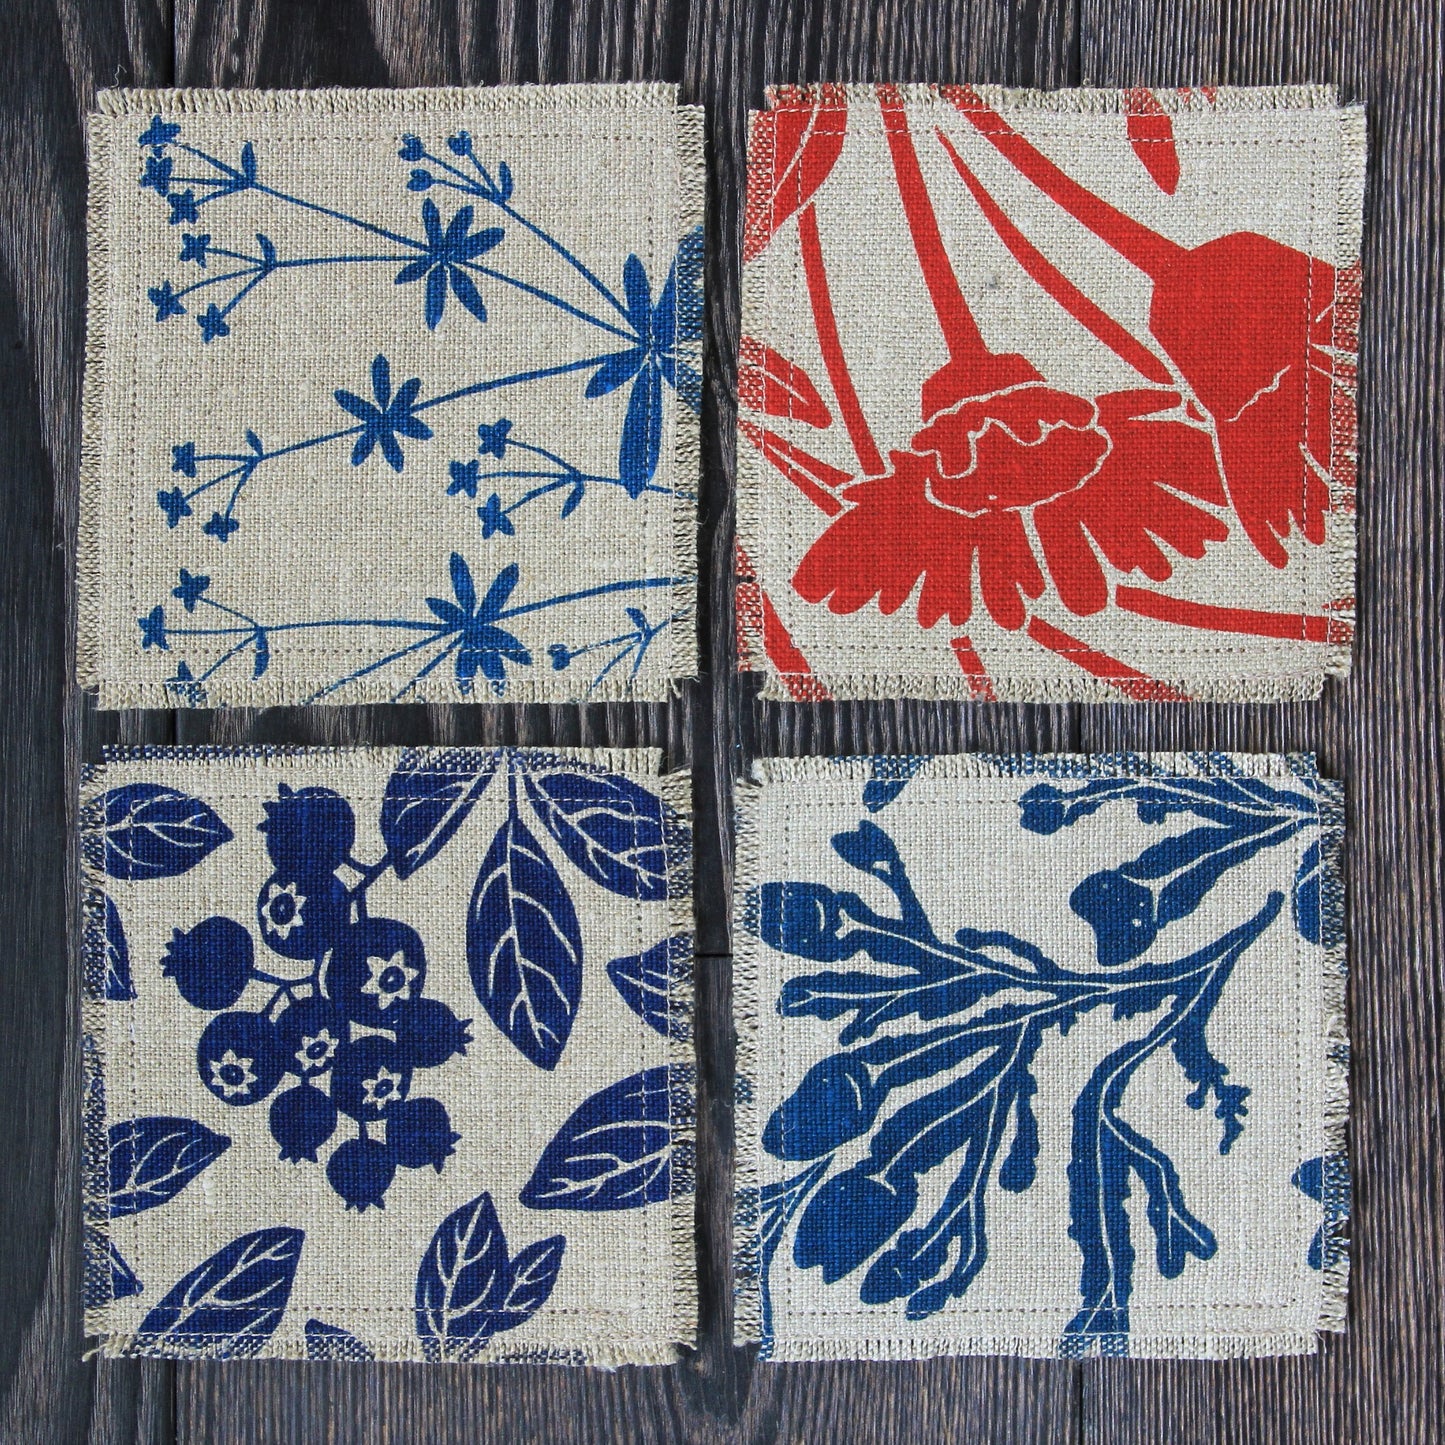 Set of 4 Linen & Felt Coasters - Mixed Patterns